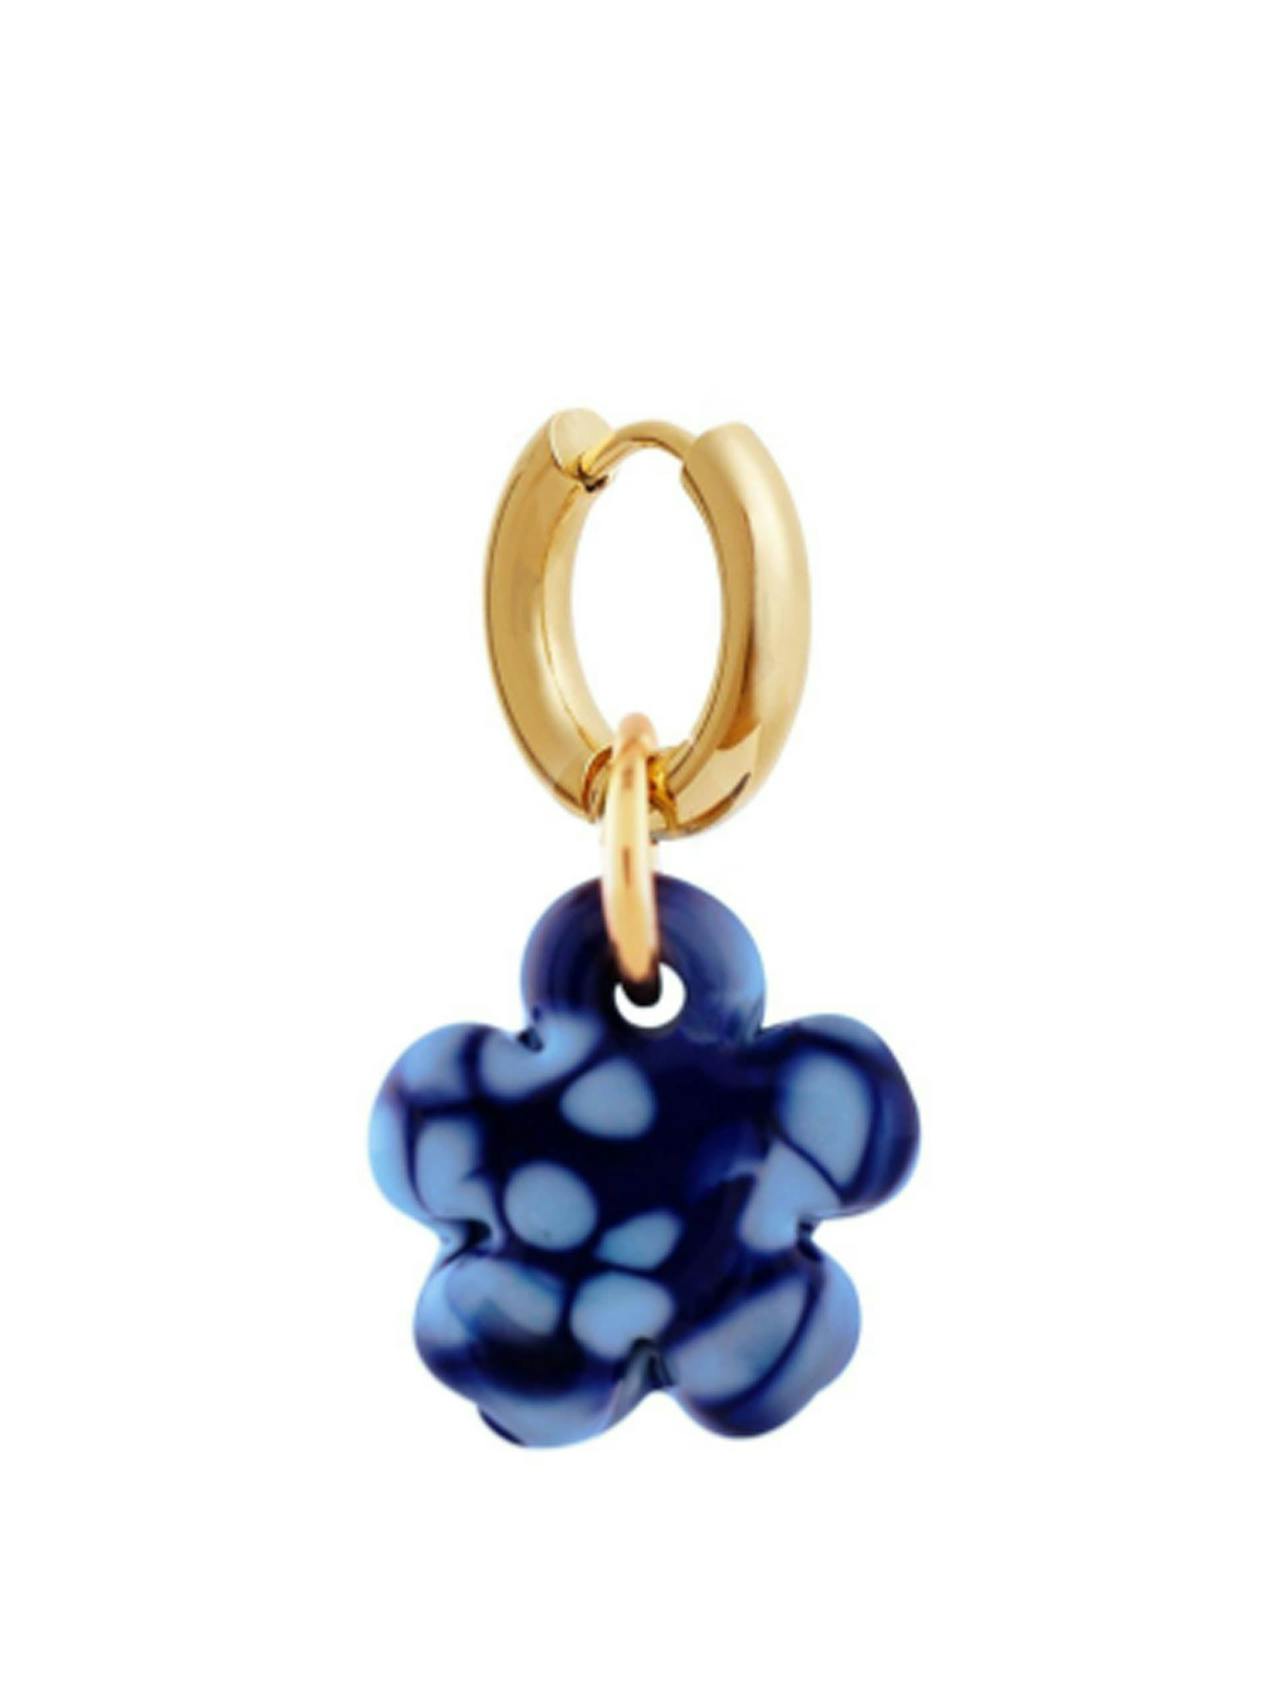 Blue glass clover earring